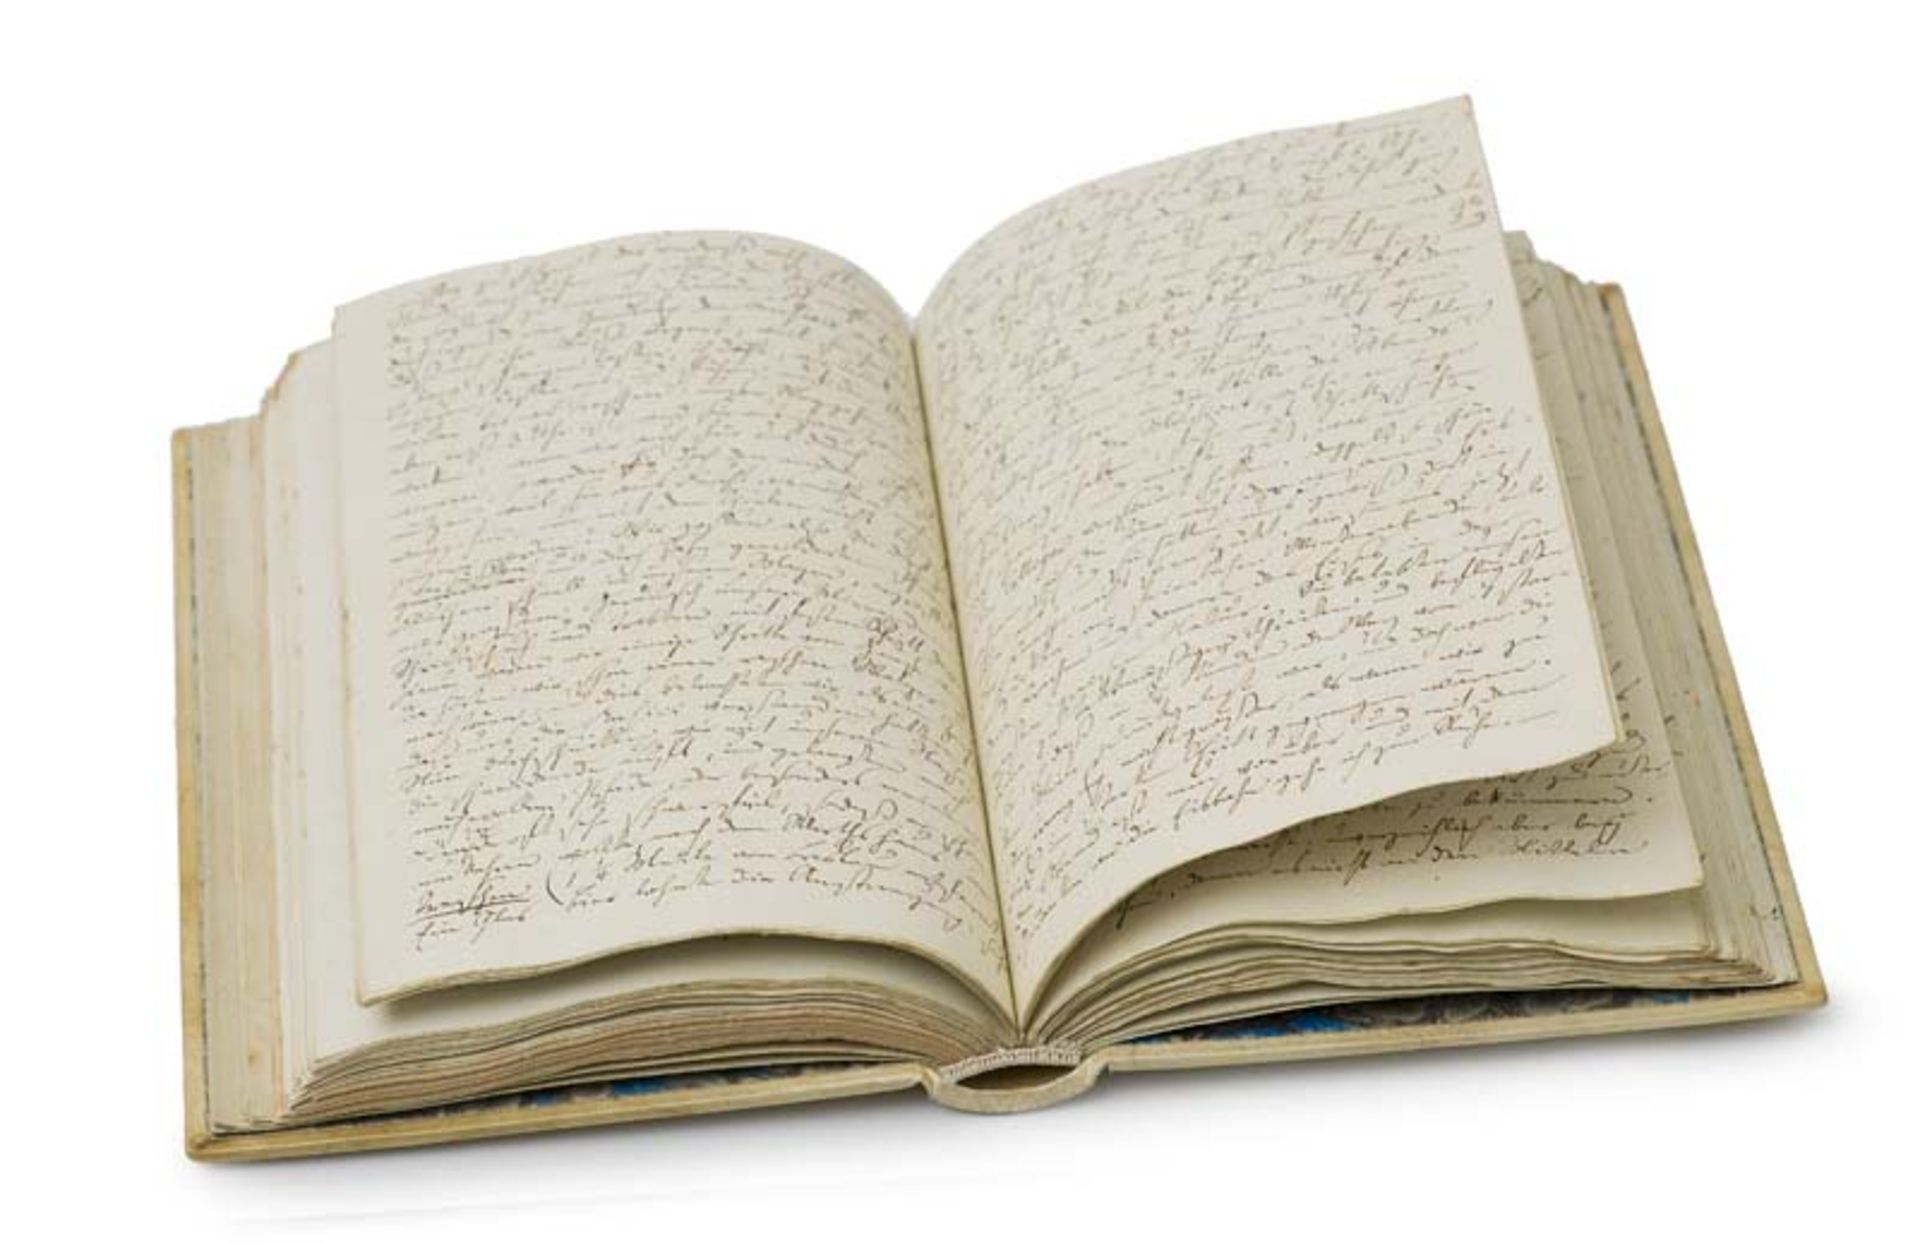 Tagebuch eines Studierenden aus den Jahren 1832-33. Deutsche Handschrift. Handschriftlich verfasstes